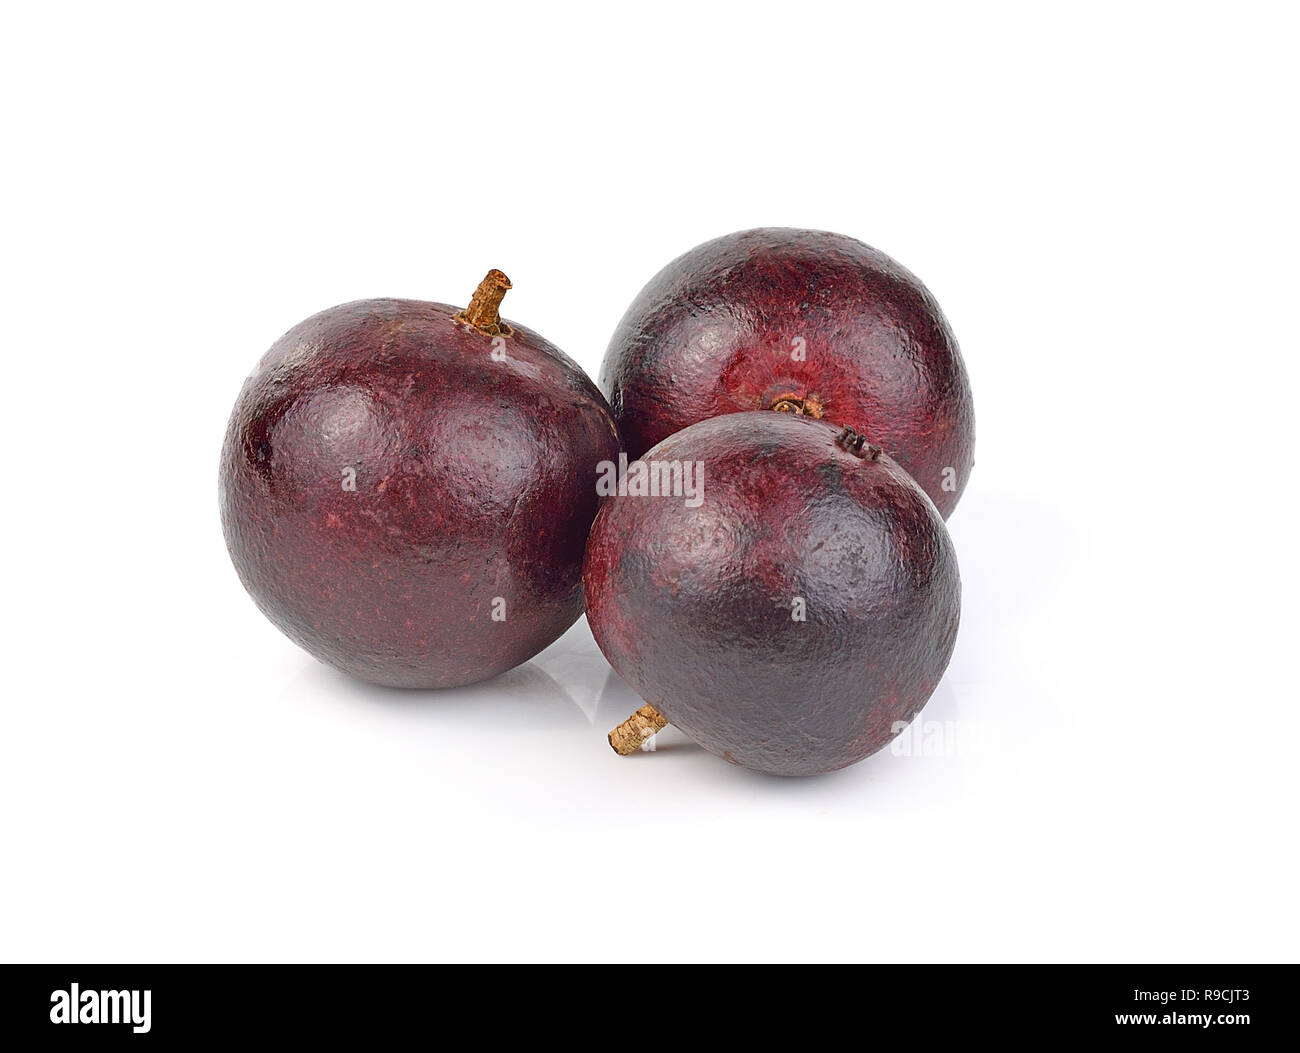 Flacourtia fruit on white background Stock Photo